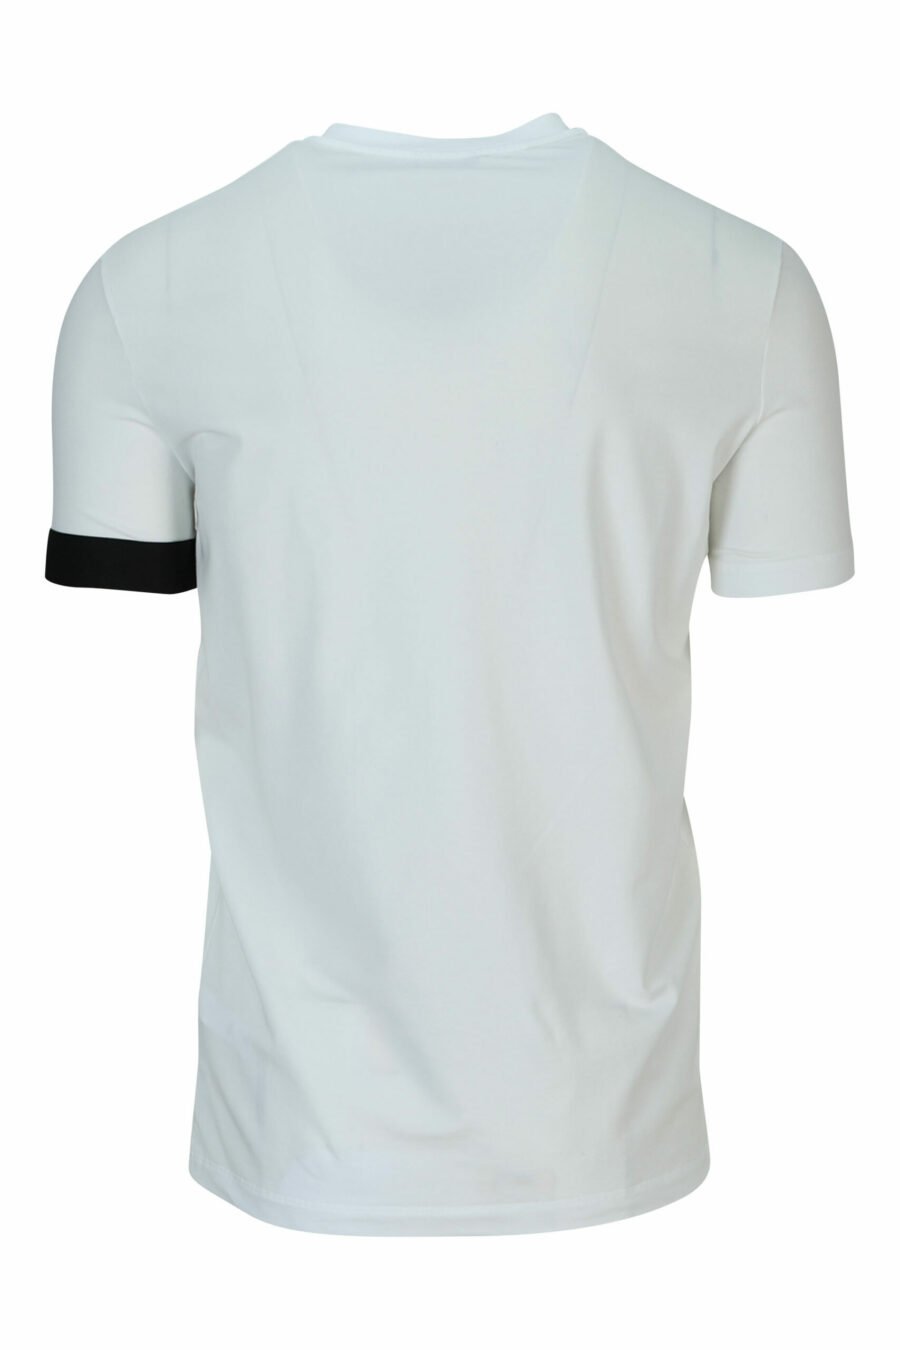 T-shirt branca com logótipo preto - 8032674767493 2 scaled